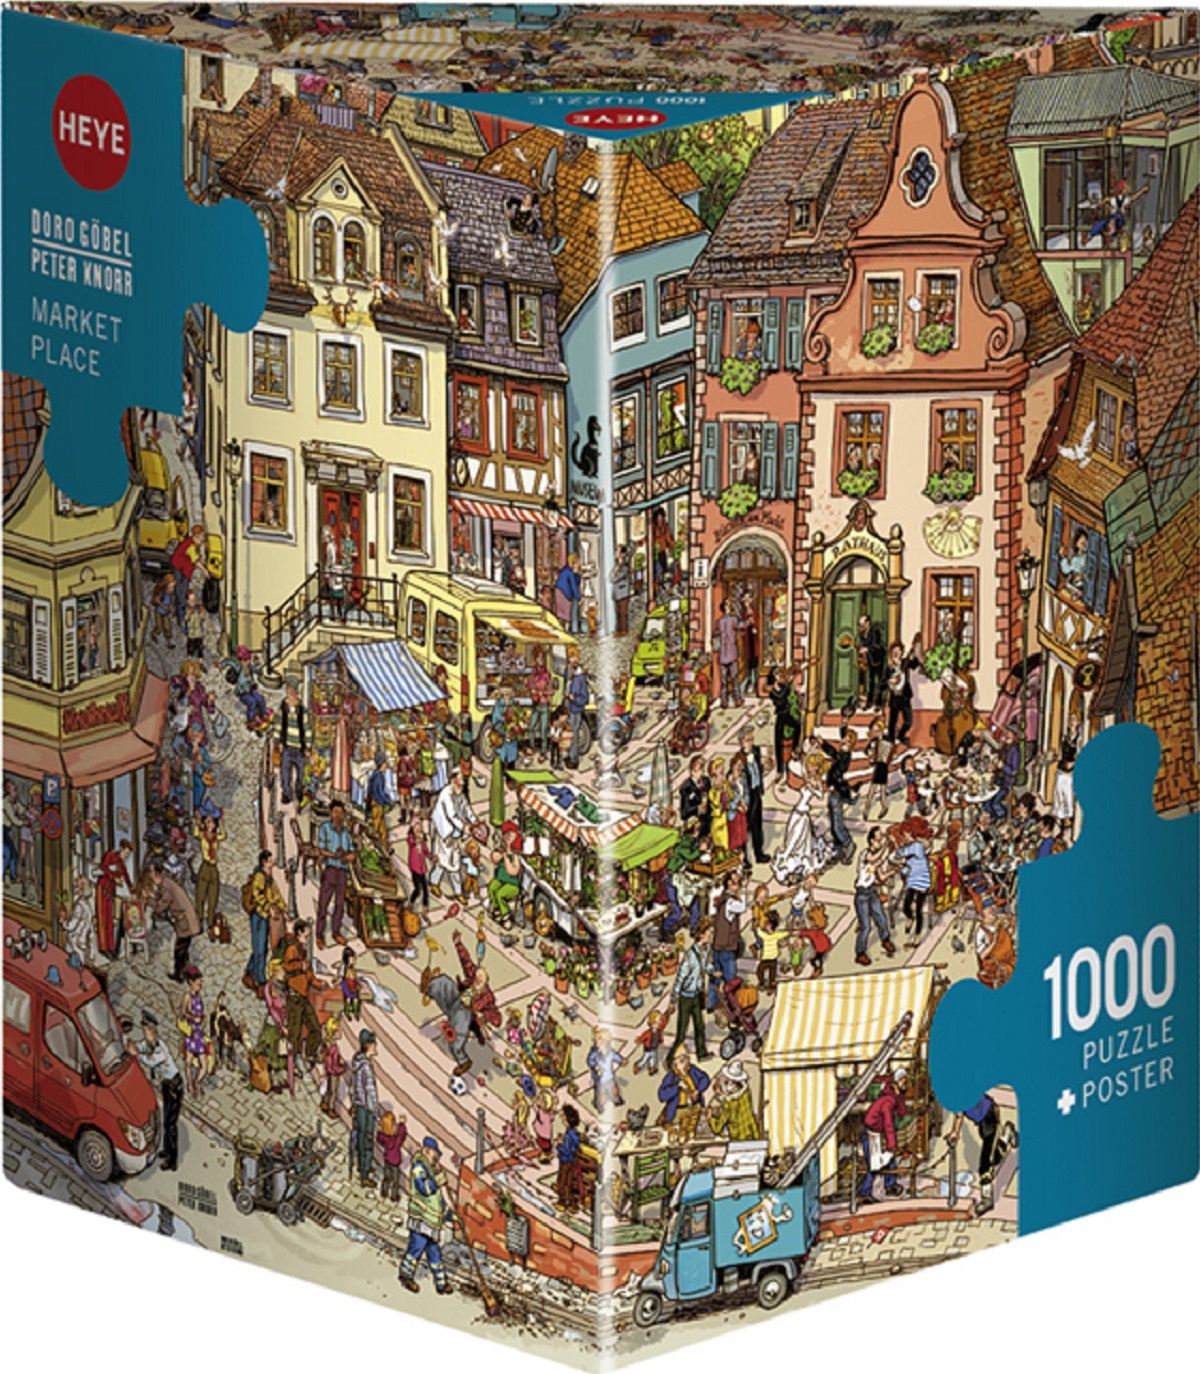 Puzzle 1000. Market Place